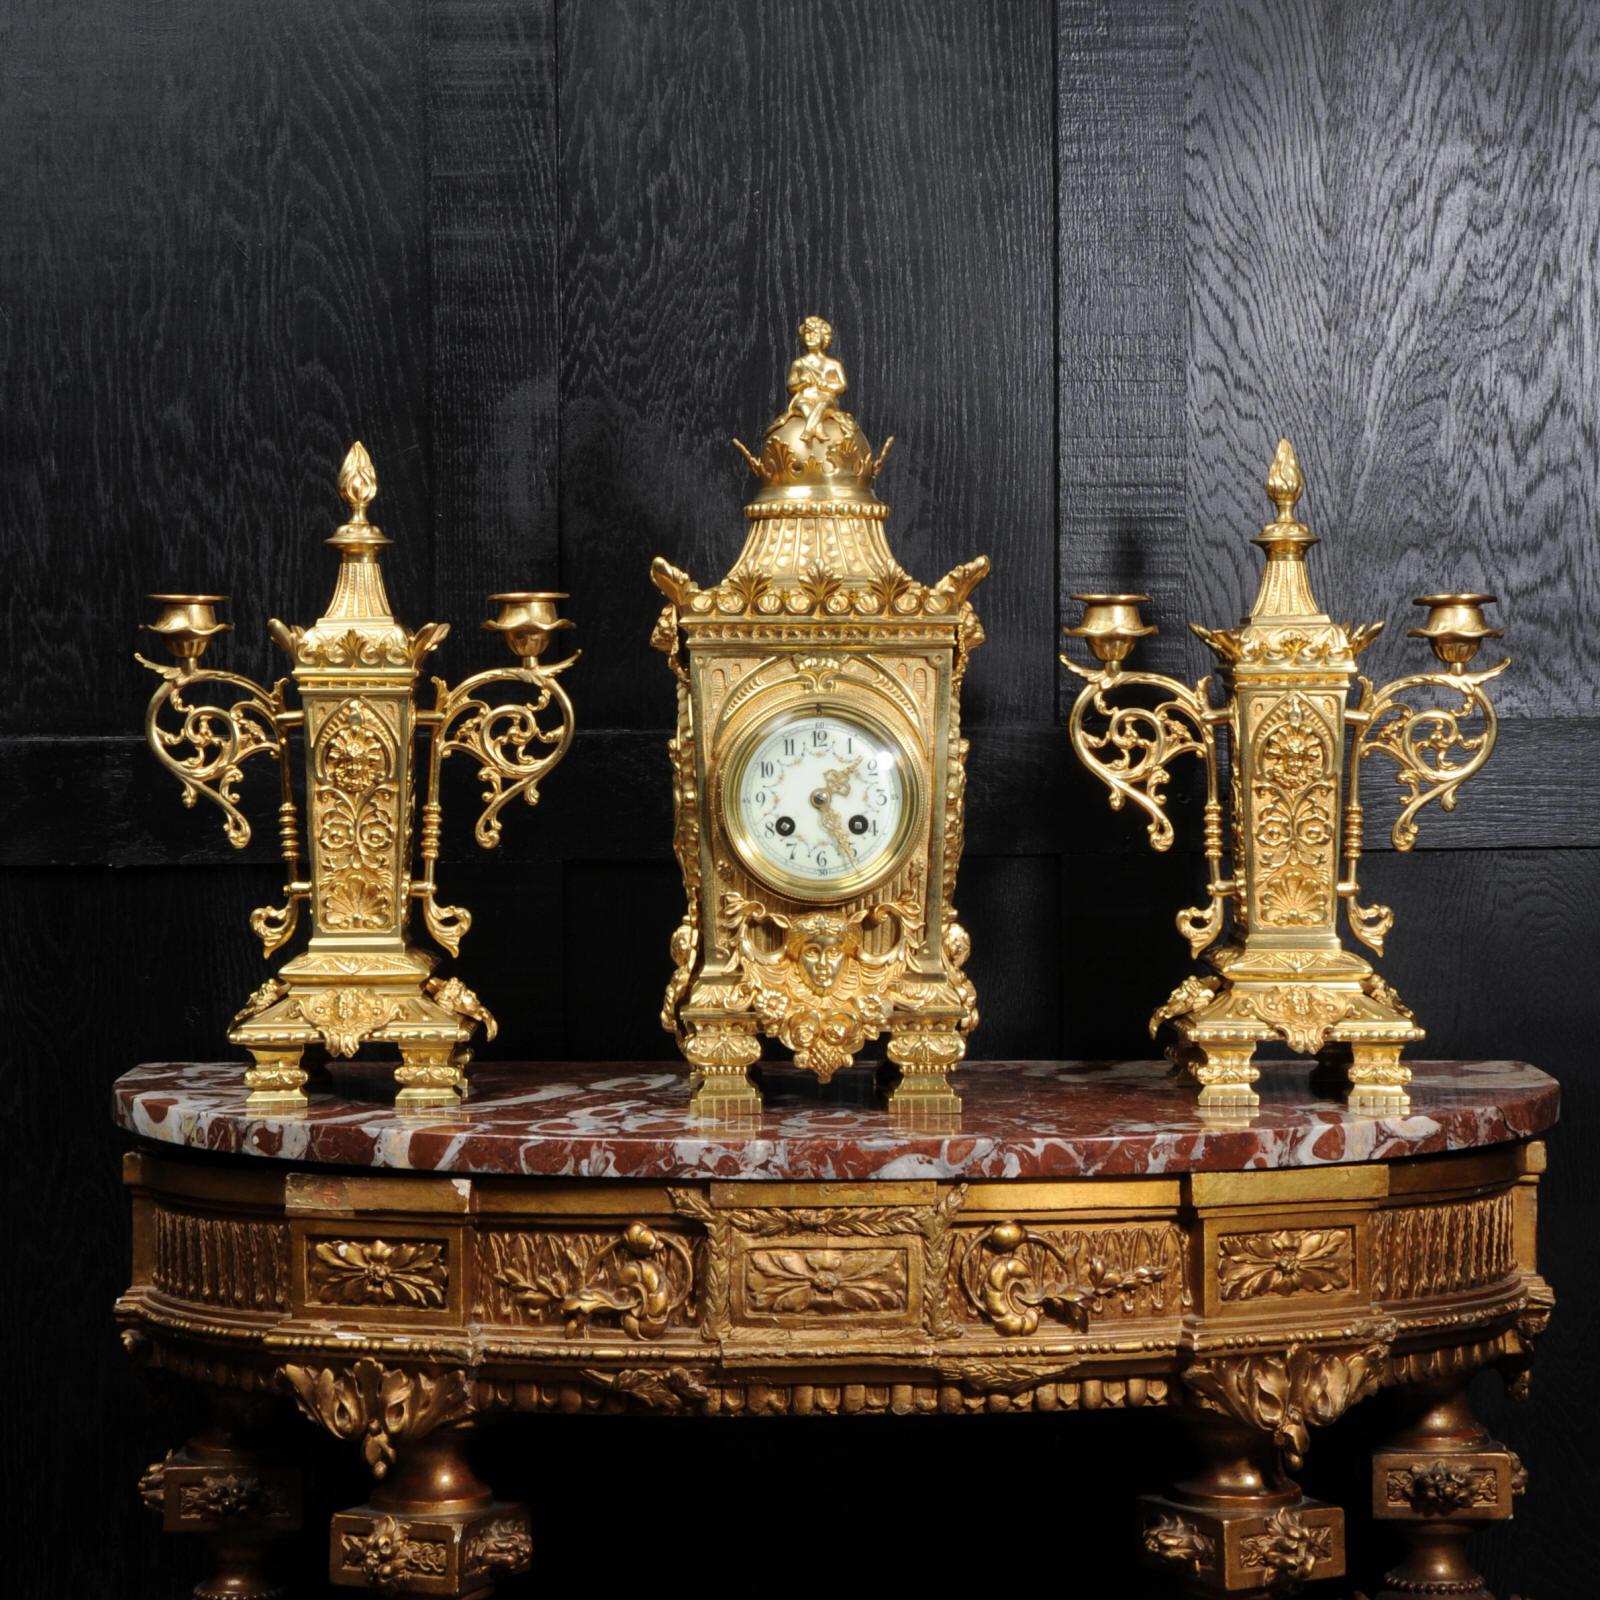 Magnifique ensemble d'horloges anciennes en bronze doré de Japy Frères, de conception classique. Il comporte des panneaux ovales sur les côtés représentant Fortuna, la déesse de la chance, un empereur sur le devant et des masques de lions. Au sommet